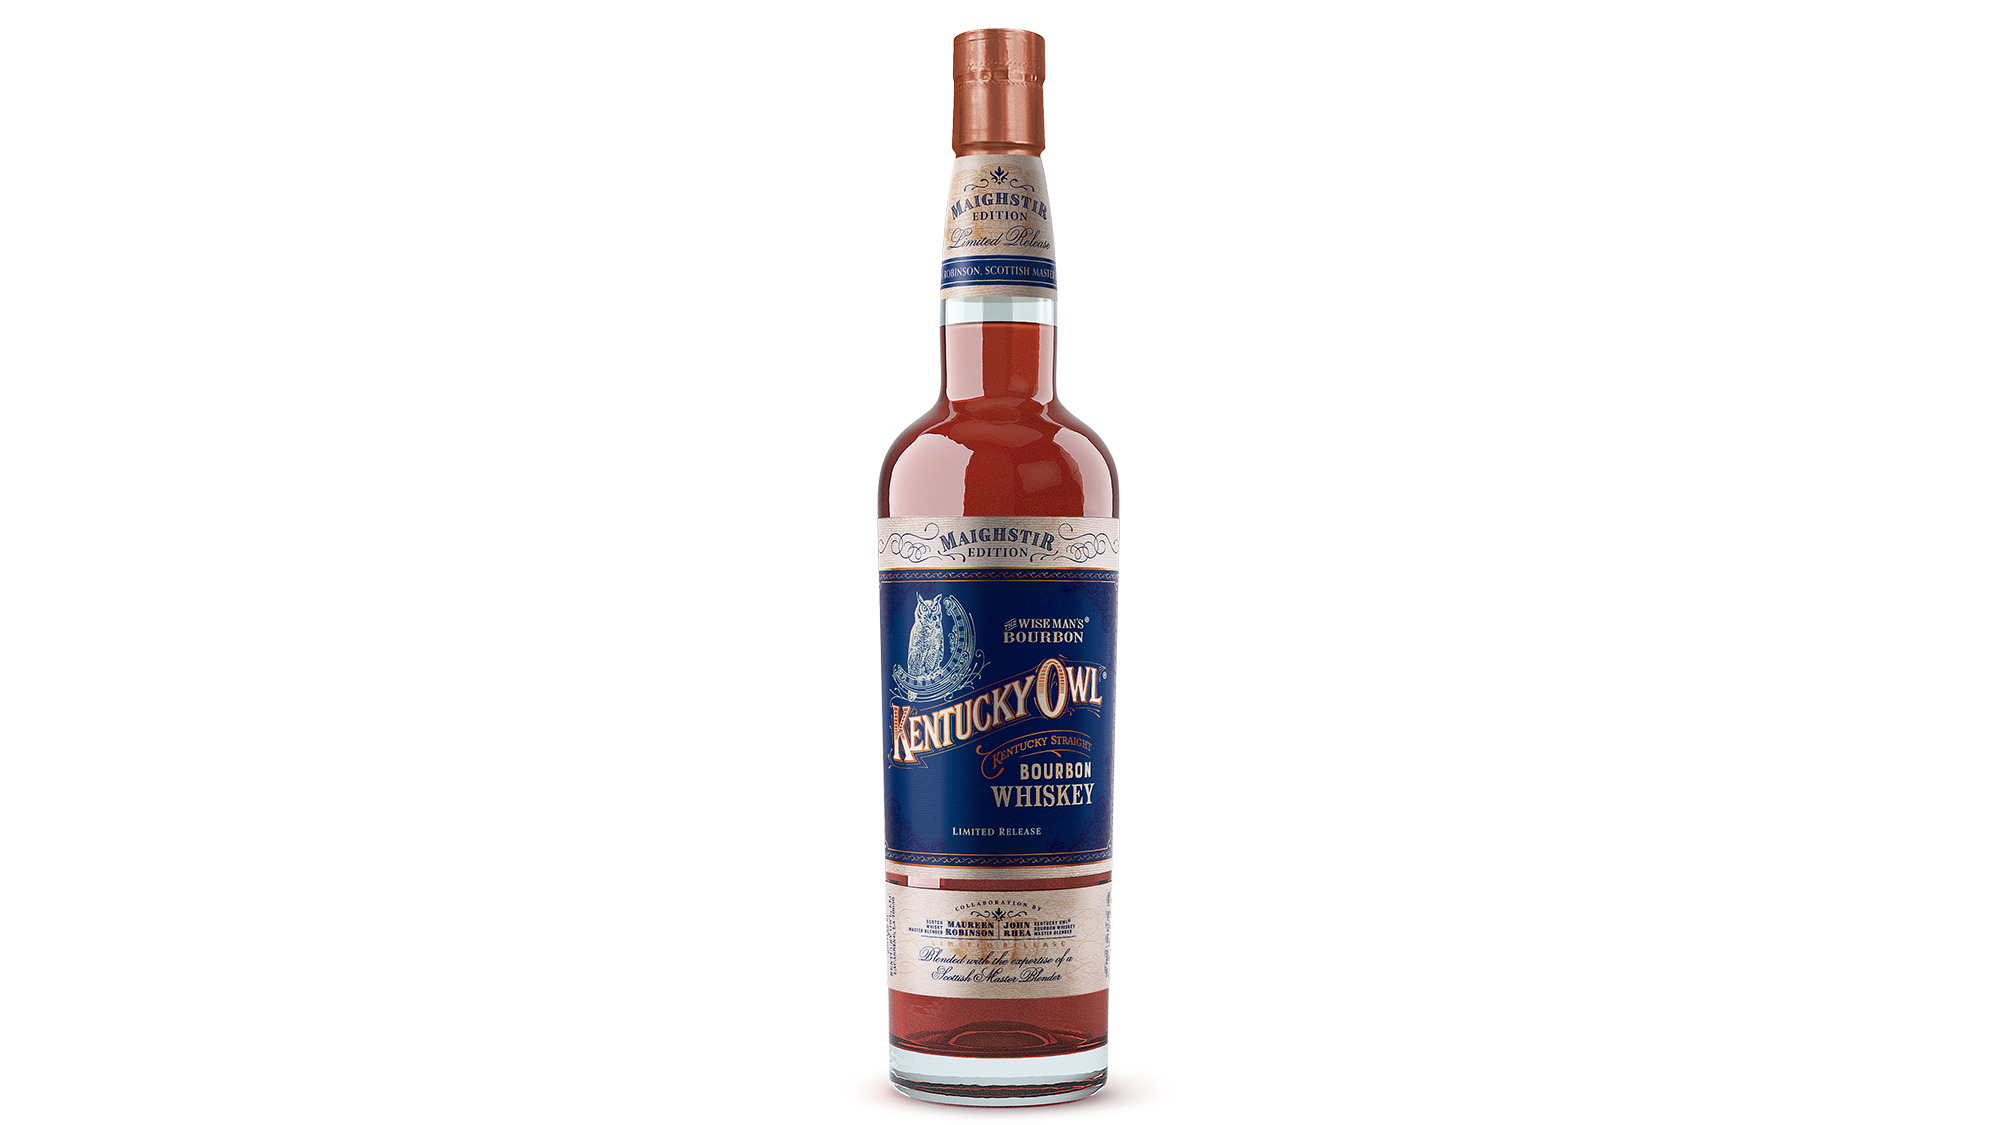 Kentucky Owl Just Made A Scotch-Inspired Bourbon, The Maighstir Edition